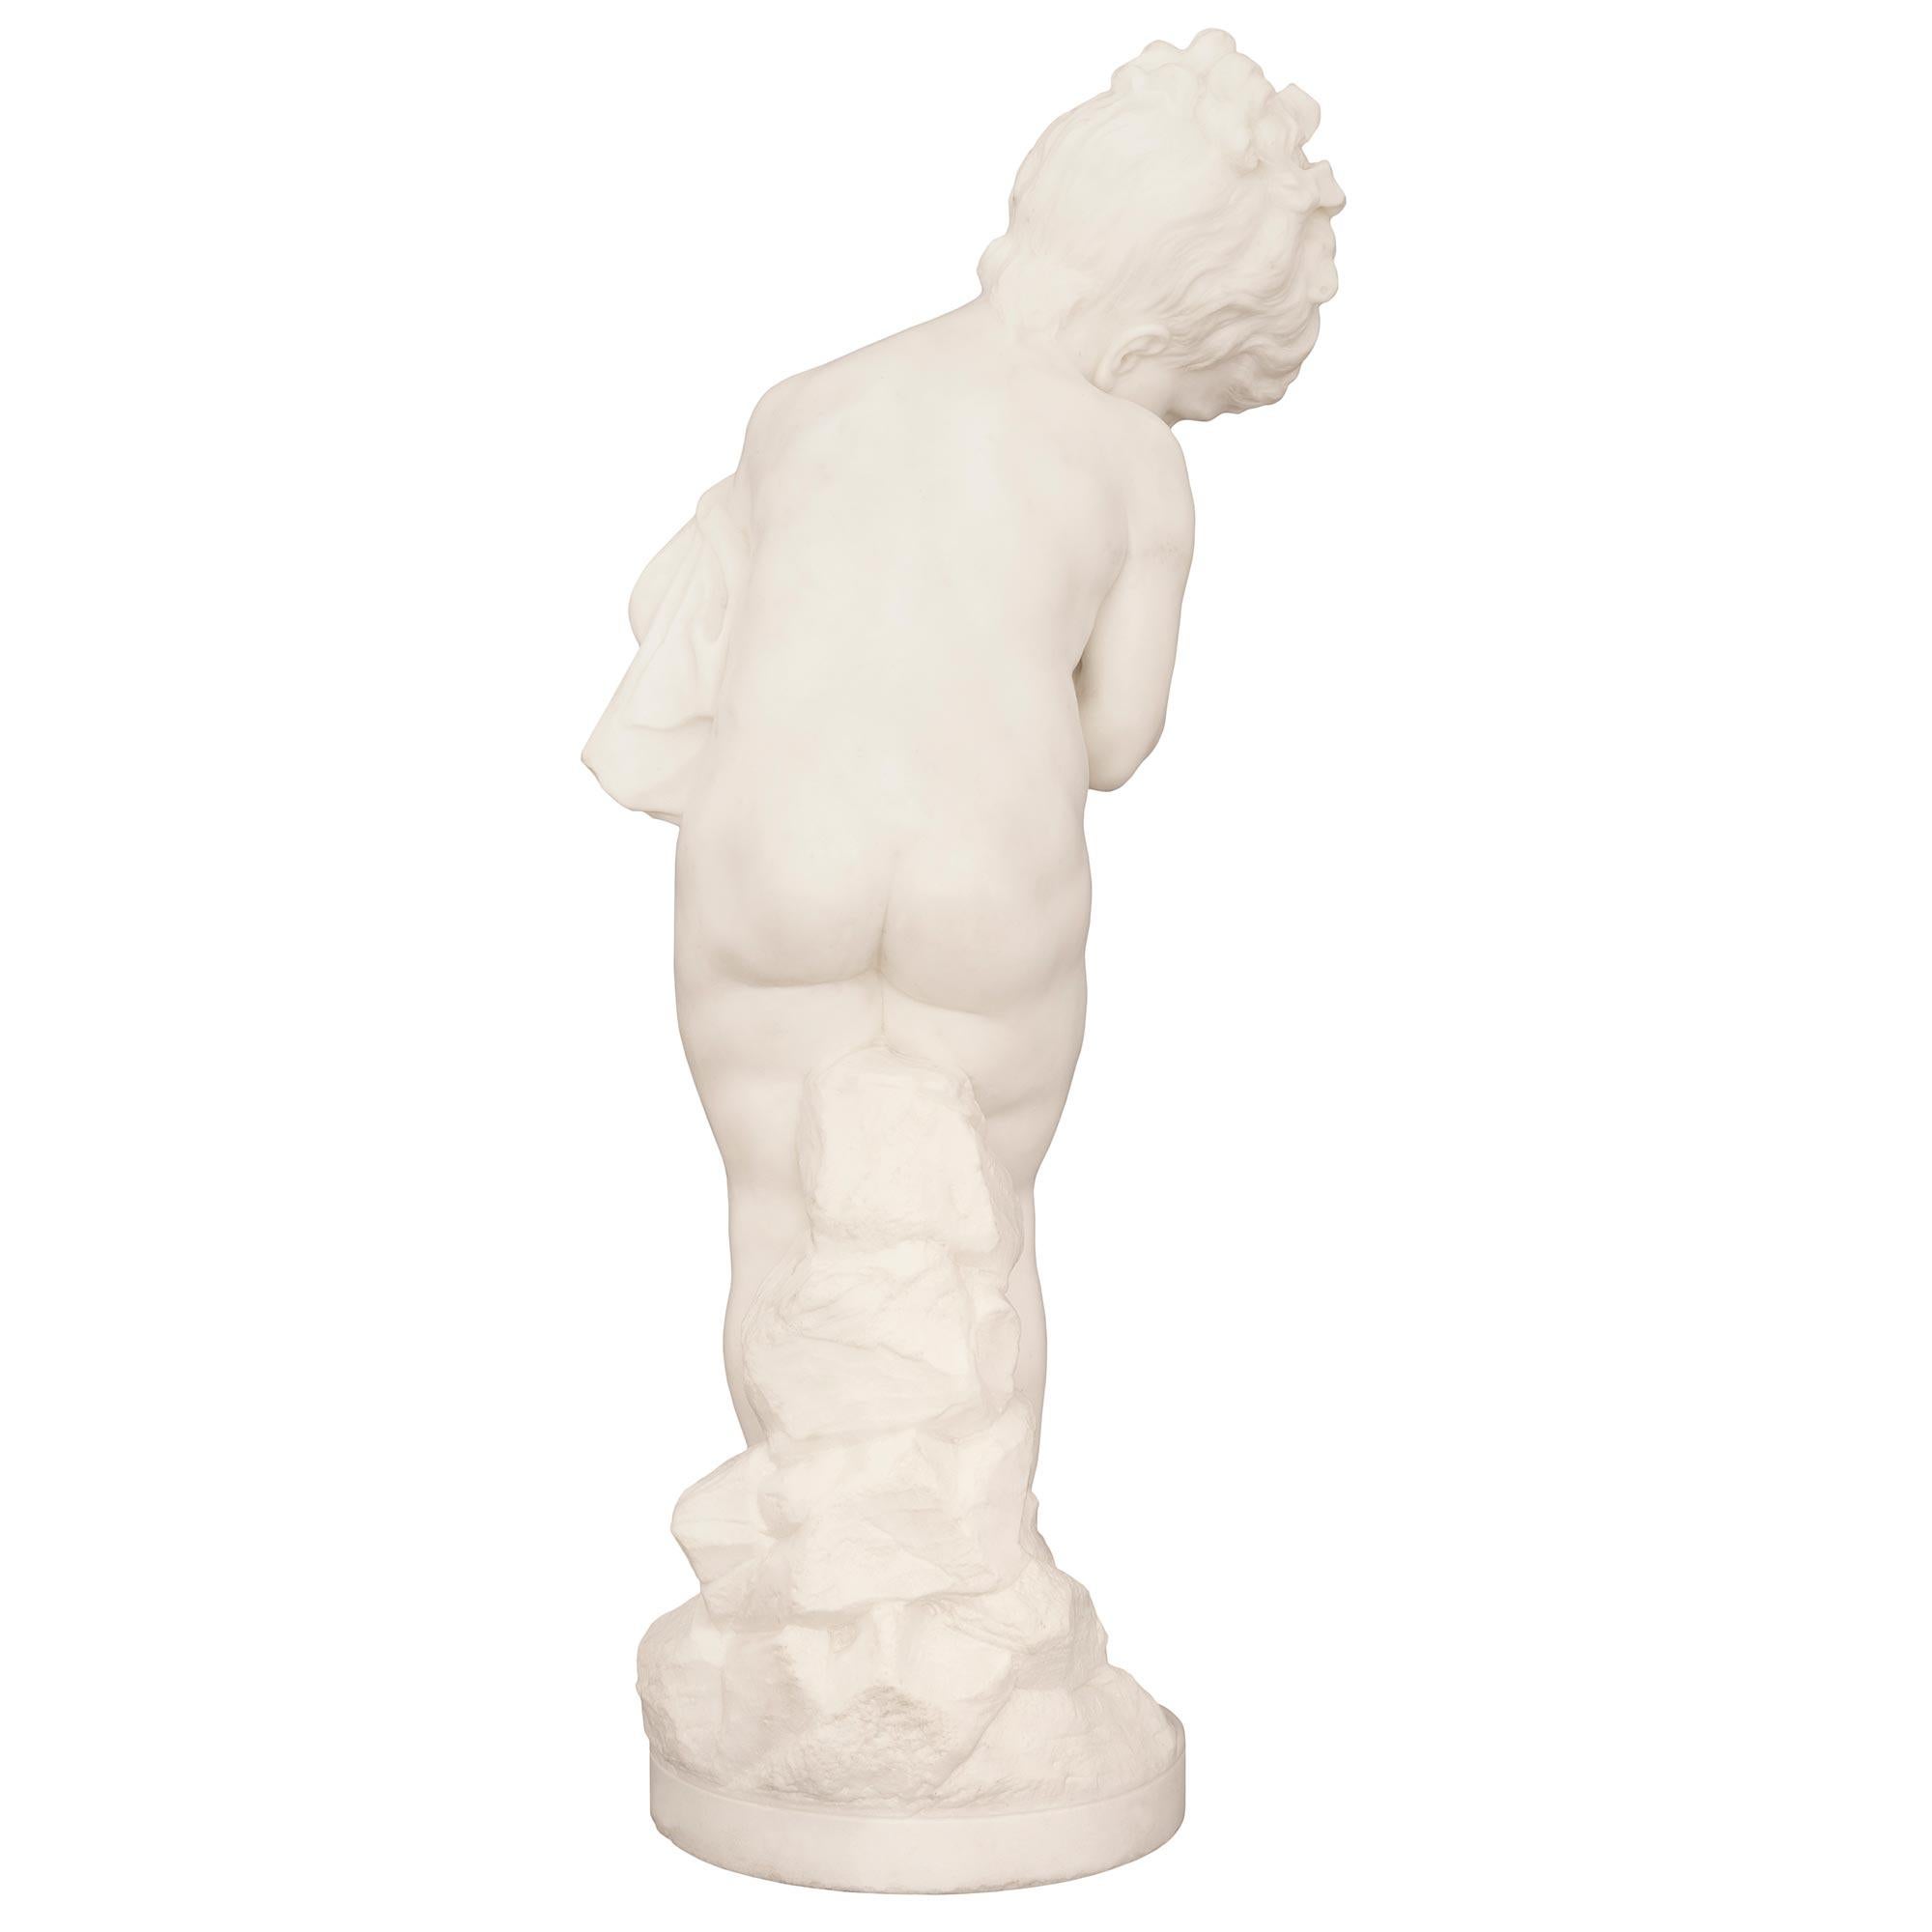 Italian 19th Century White Carrara Marble Statue Signed F. Mariotti Scul For Sale 7